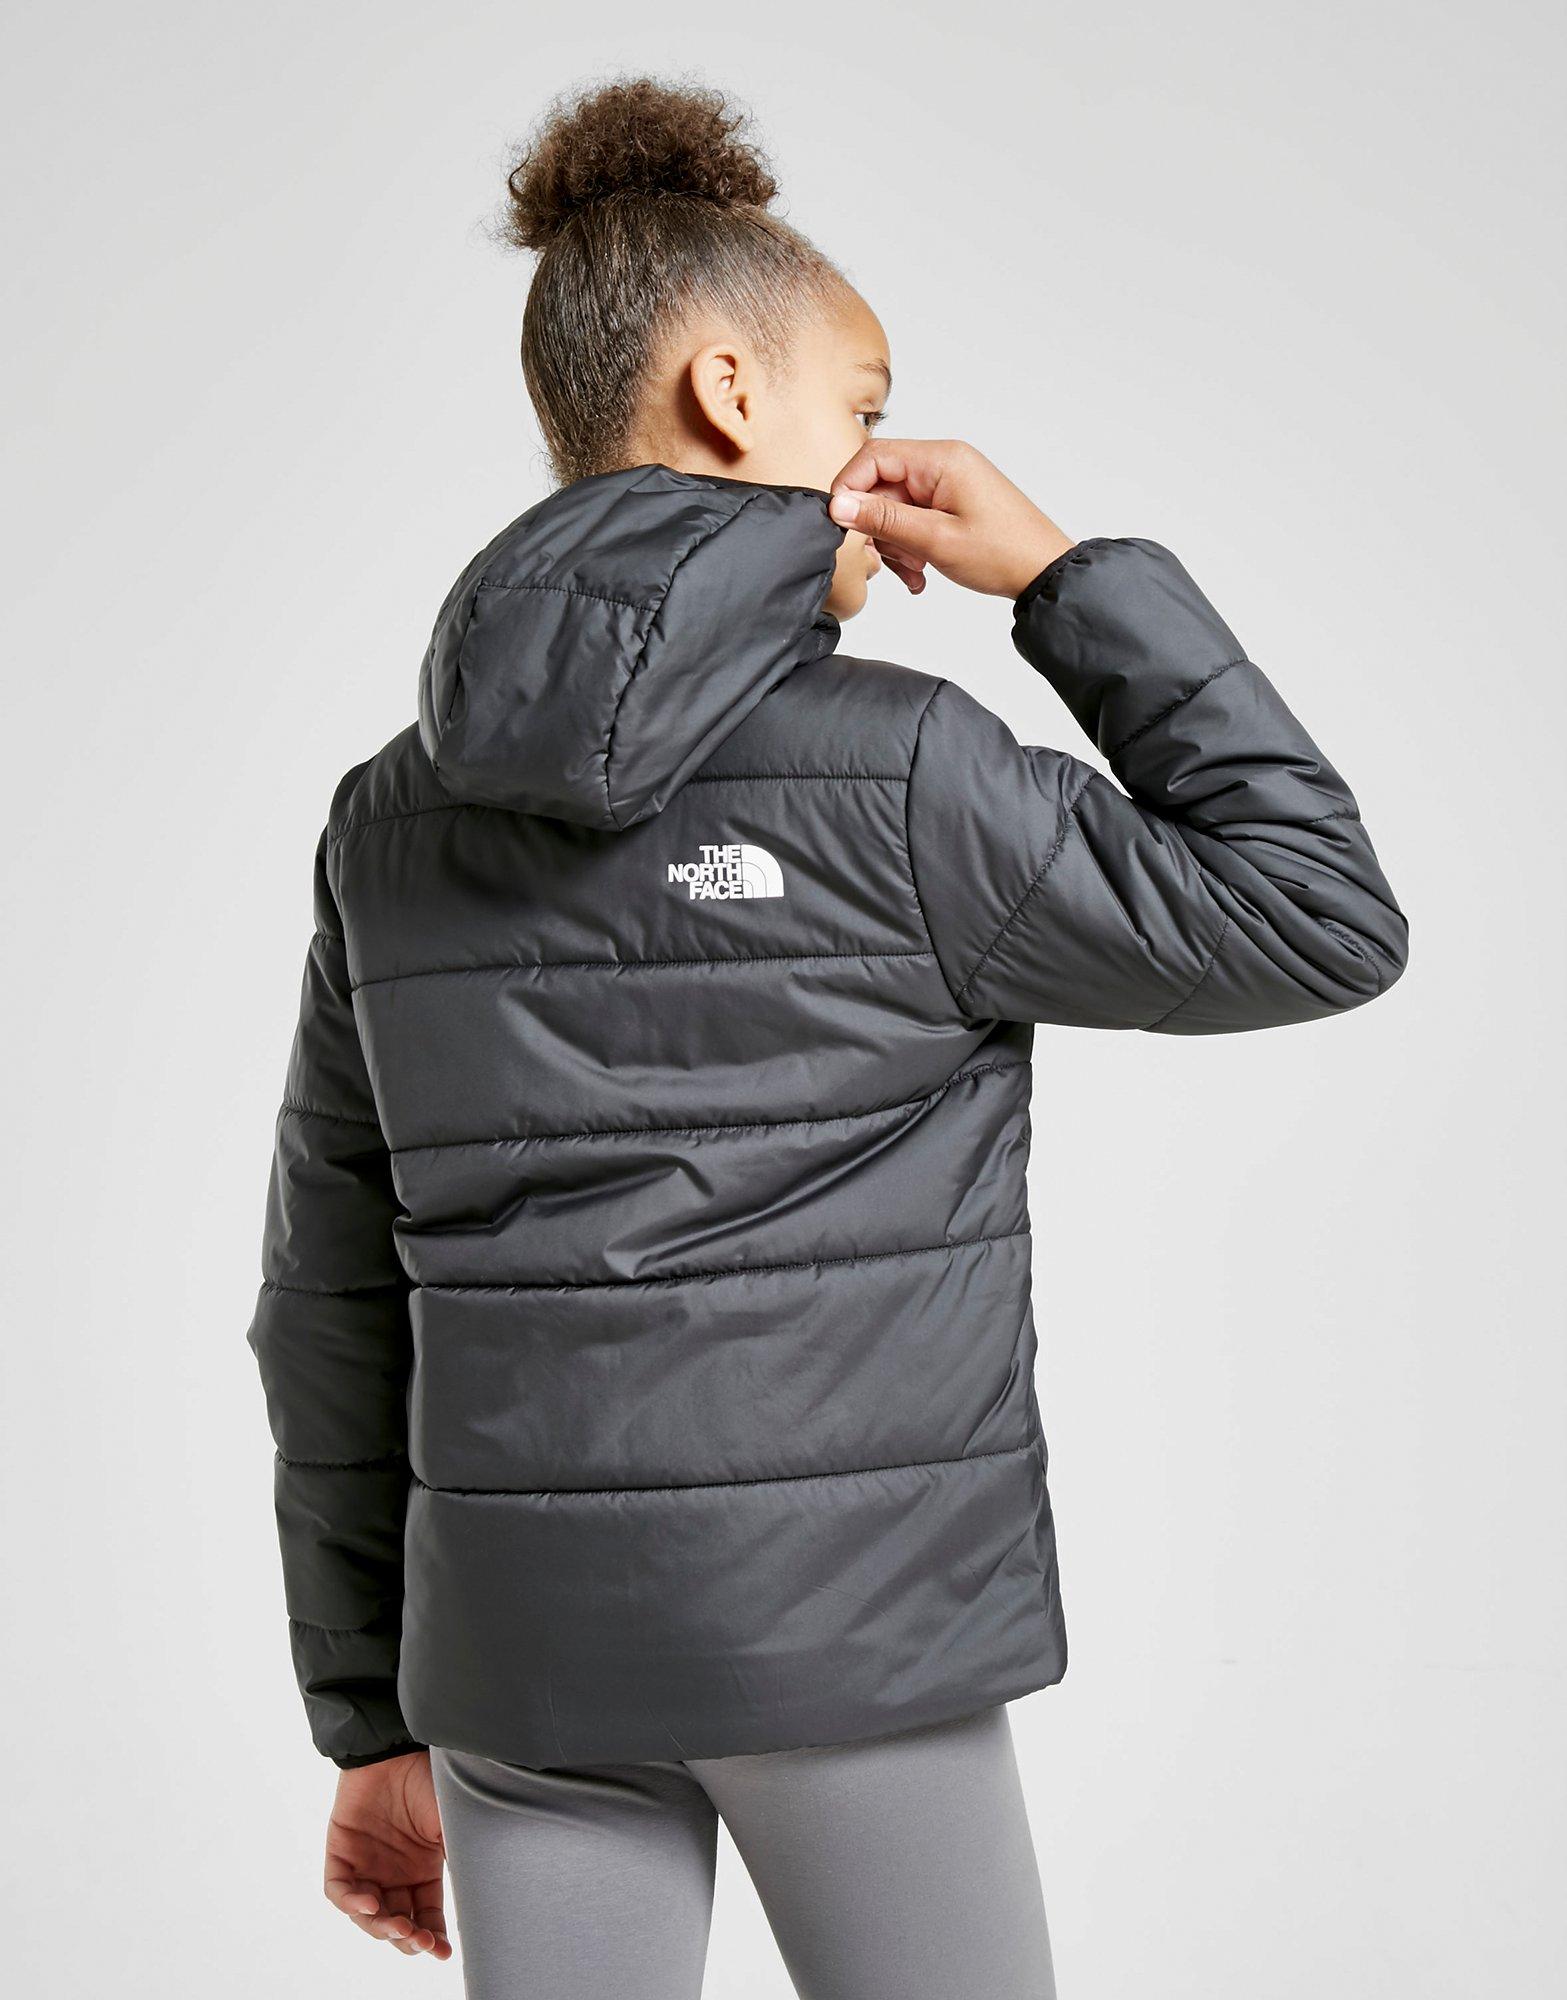 northface reversible jacket